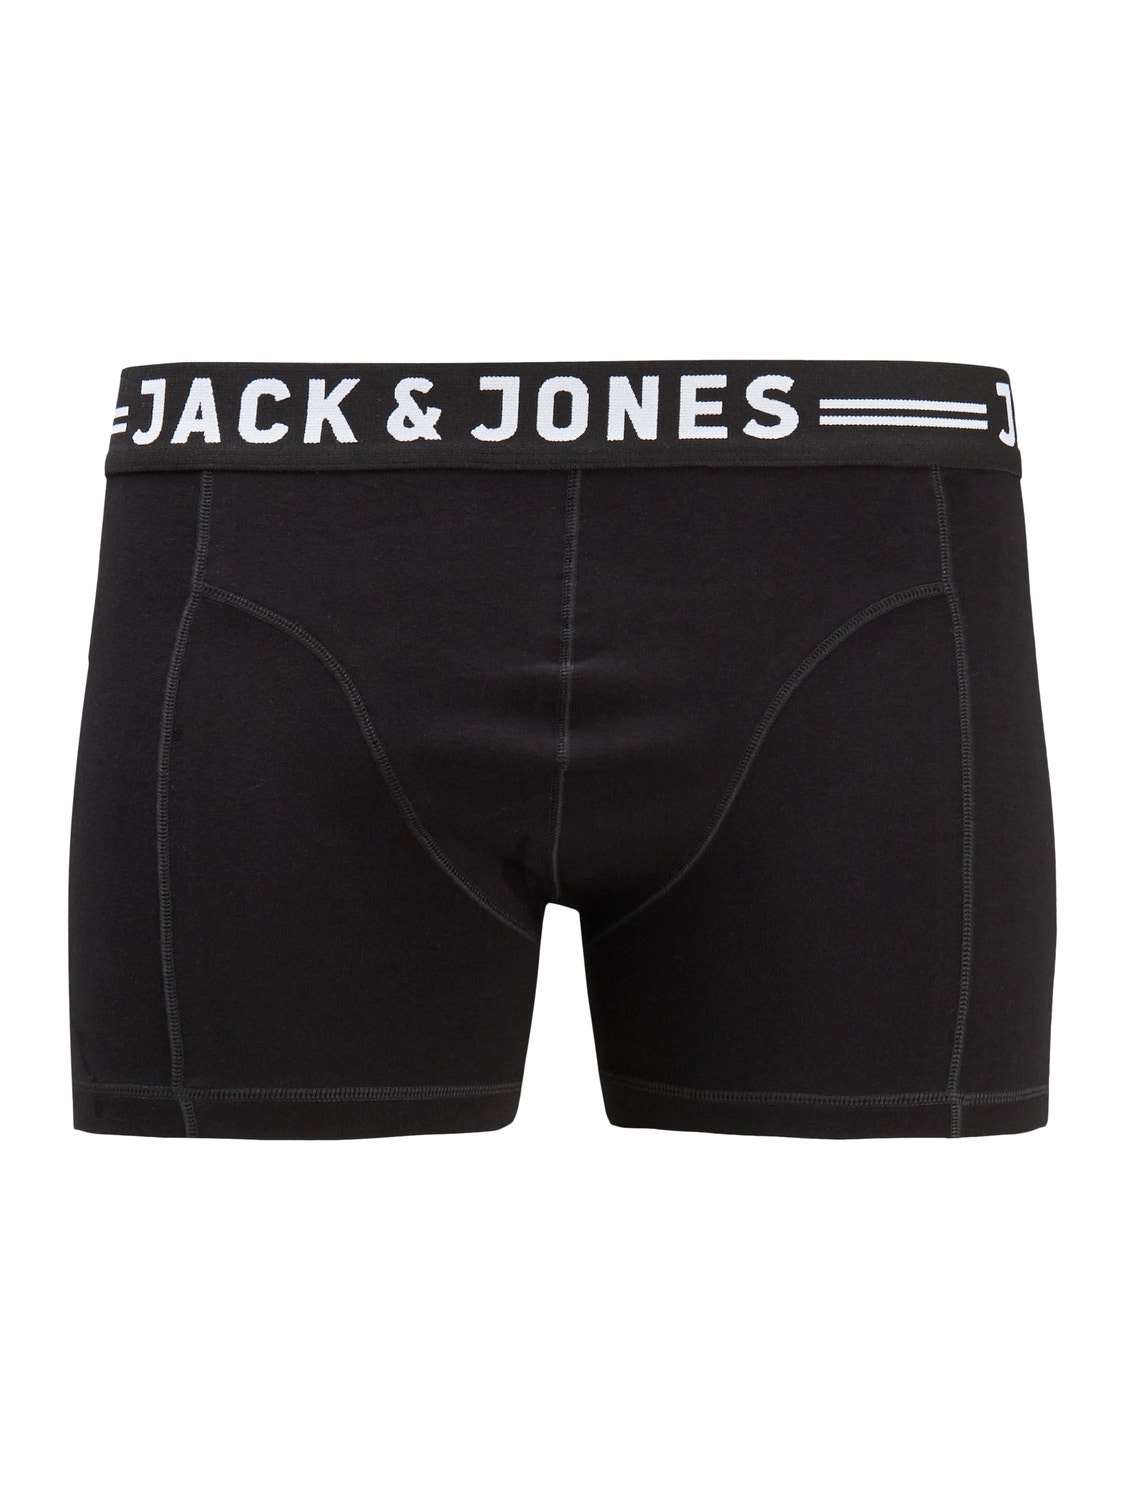 Jack & Jones Plus Size 3-pak Trunks -Black - 12147591